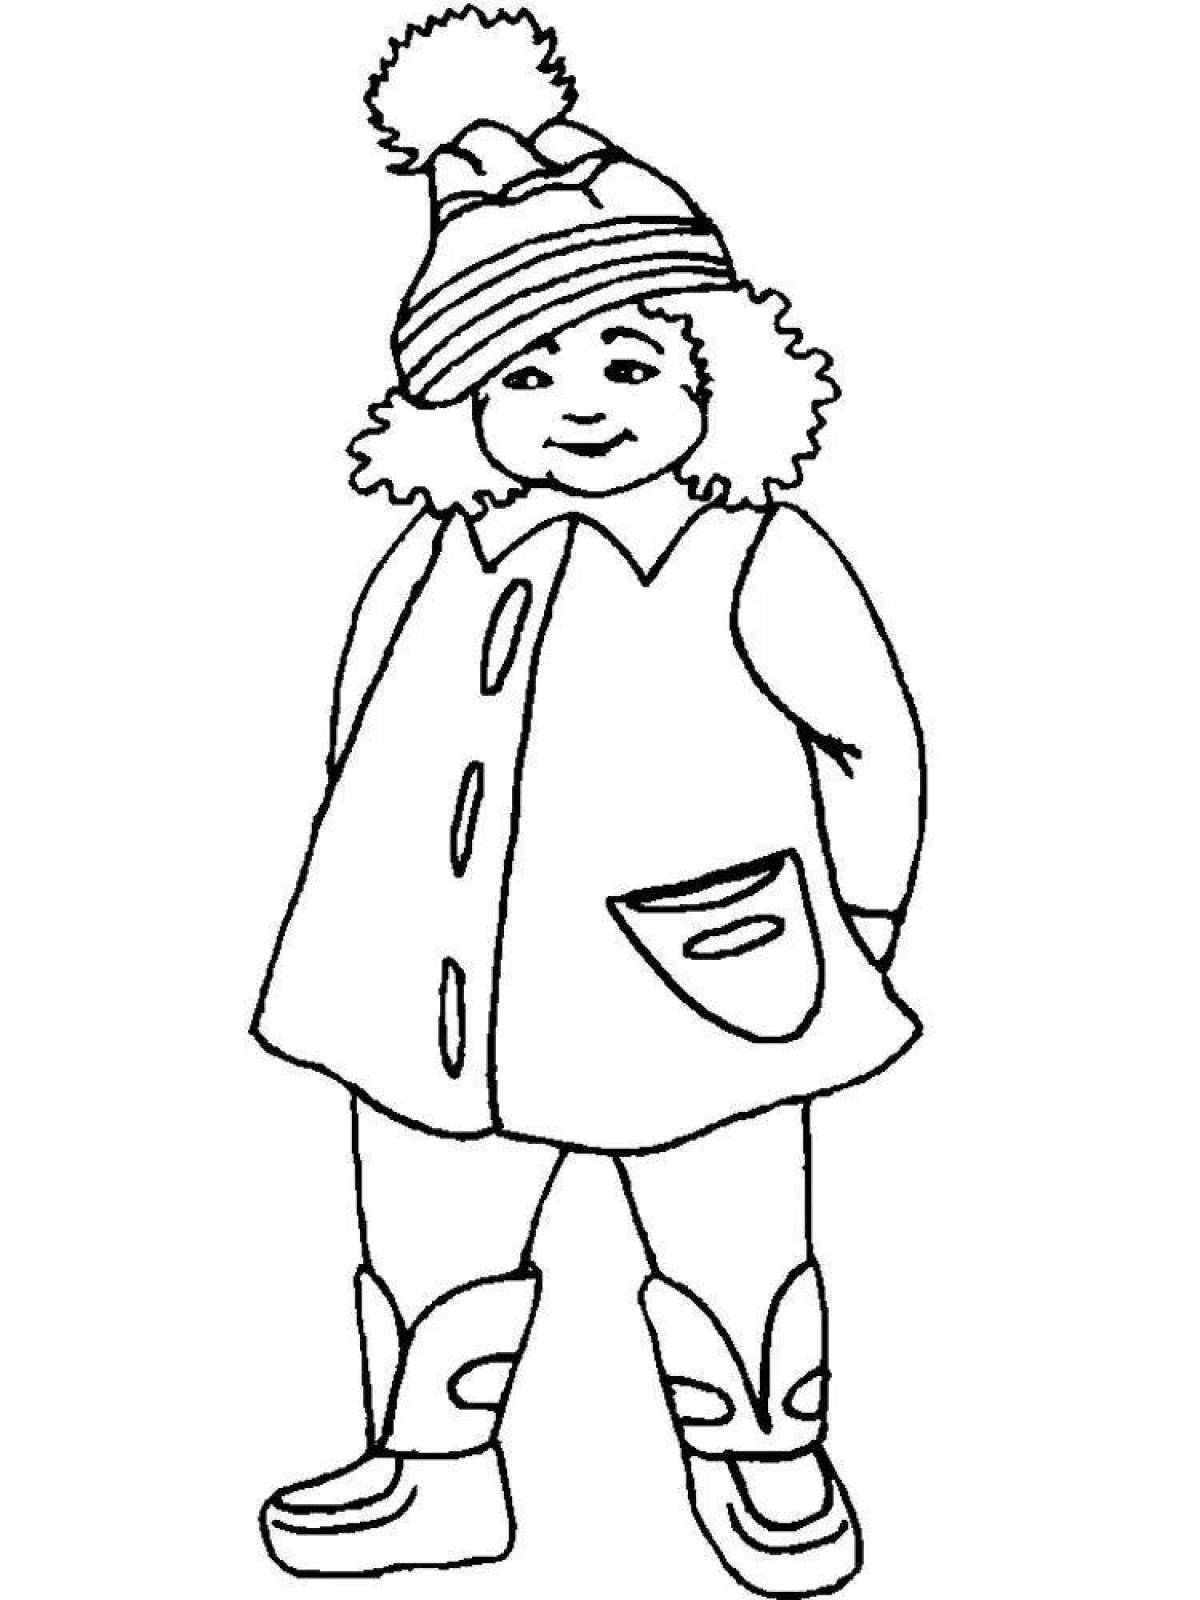 Красочная раскраска мальчик в зимней одежде